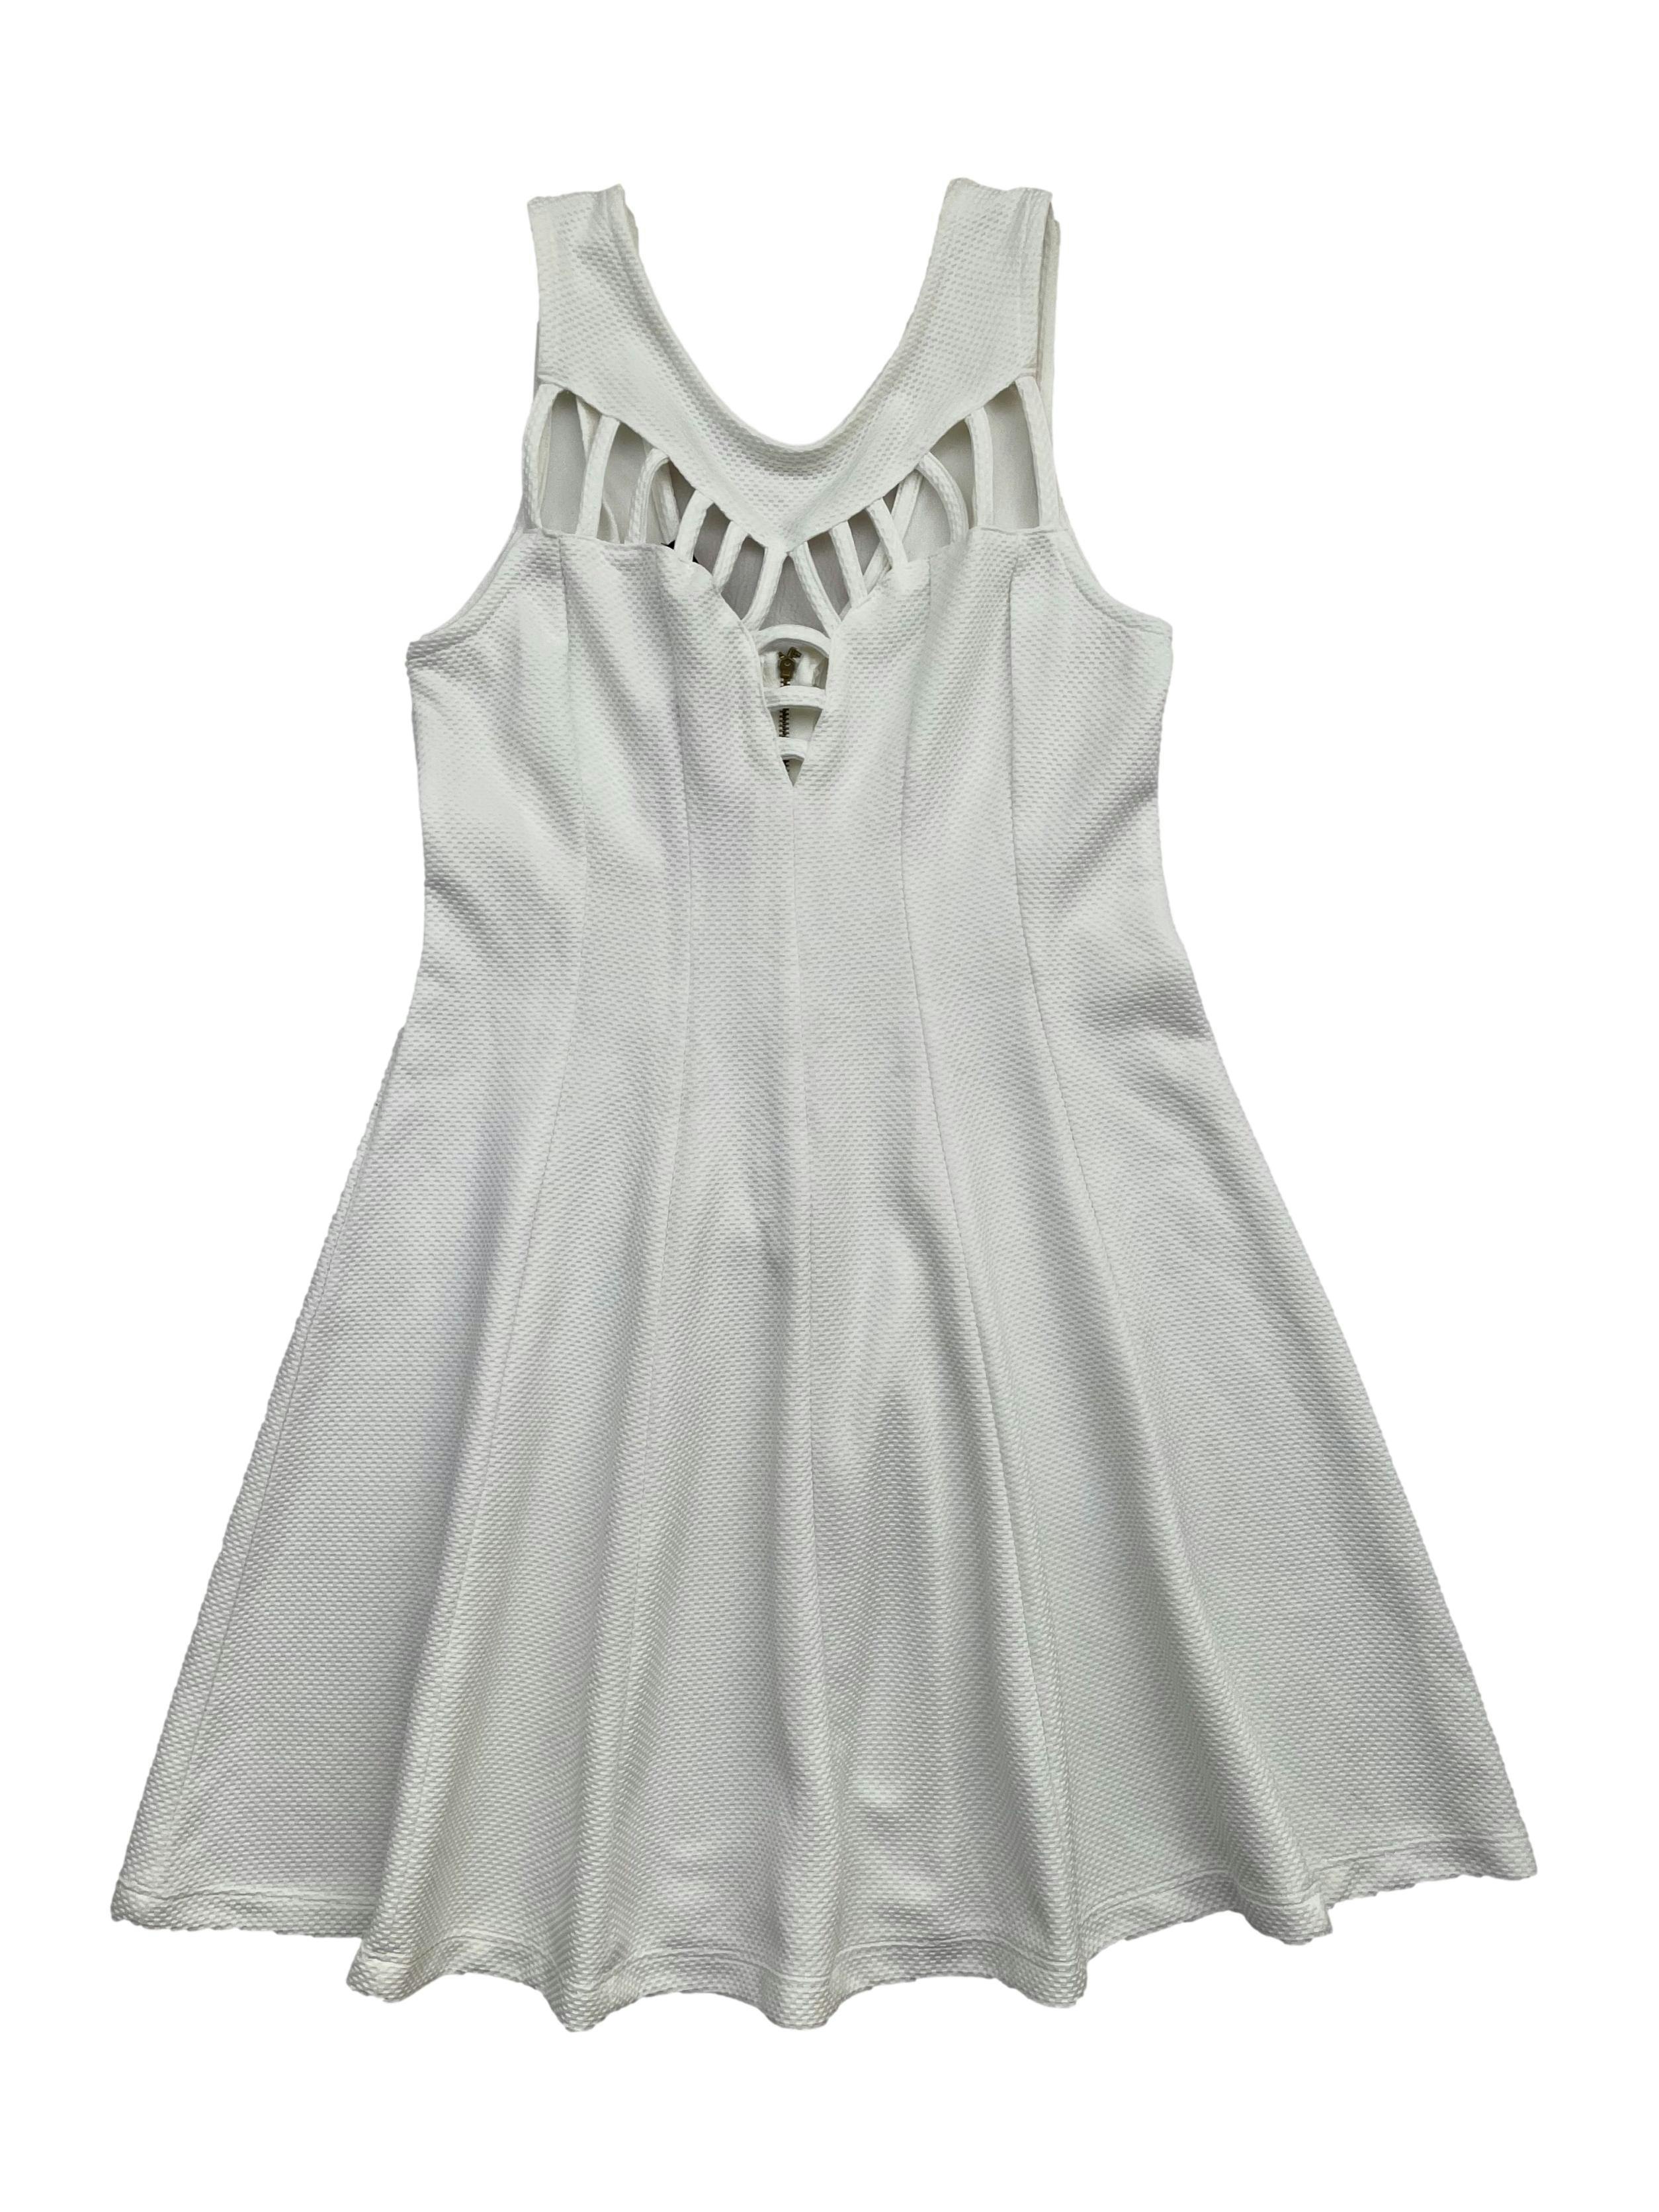 Vestido blanco tela con textura ligeramente stretch, con escote tipo rejilla en pecho y cierre en espalda. Busto 80cm, Largo 80cm.